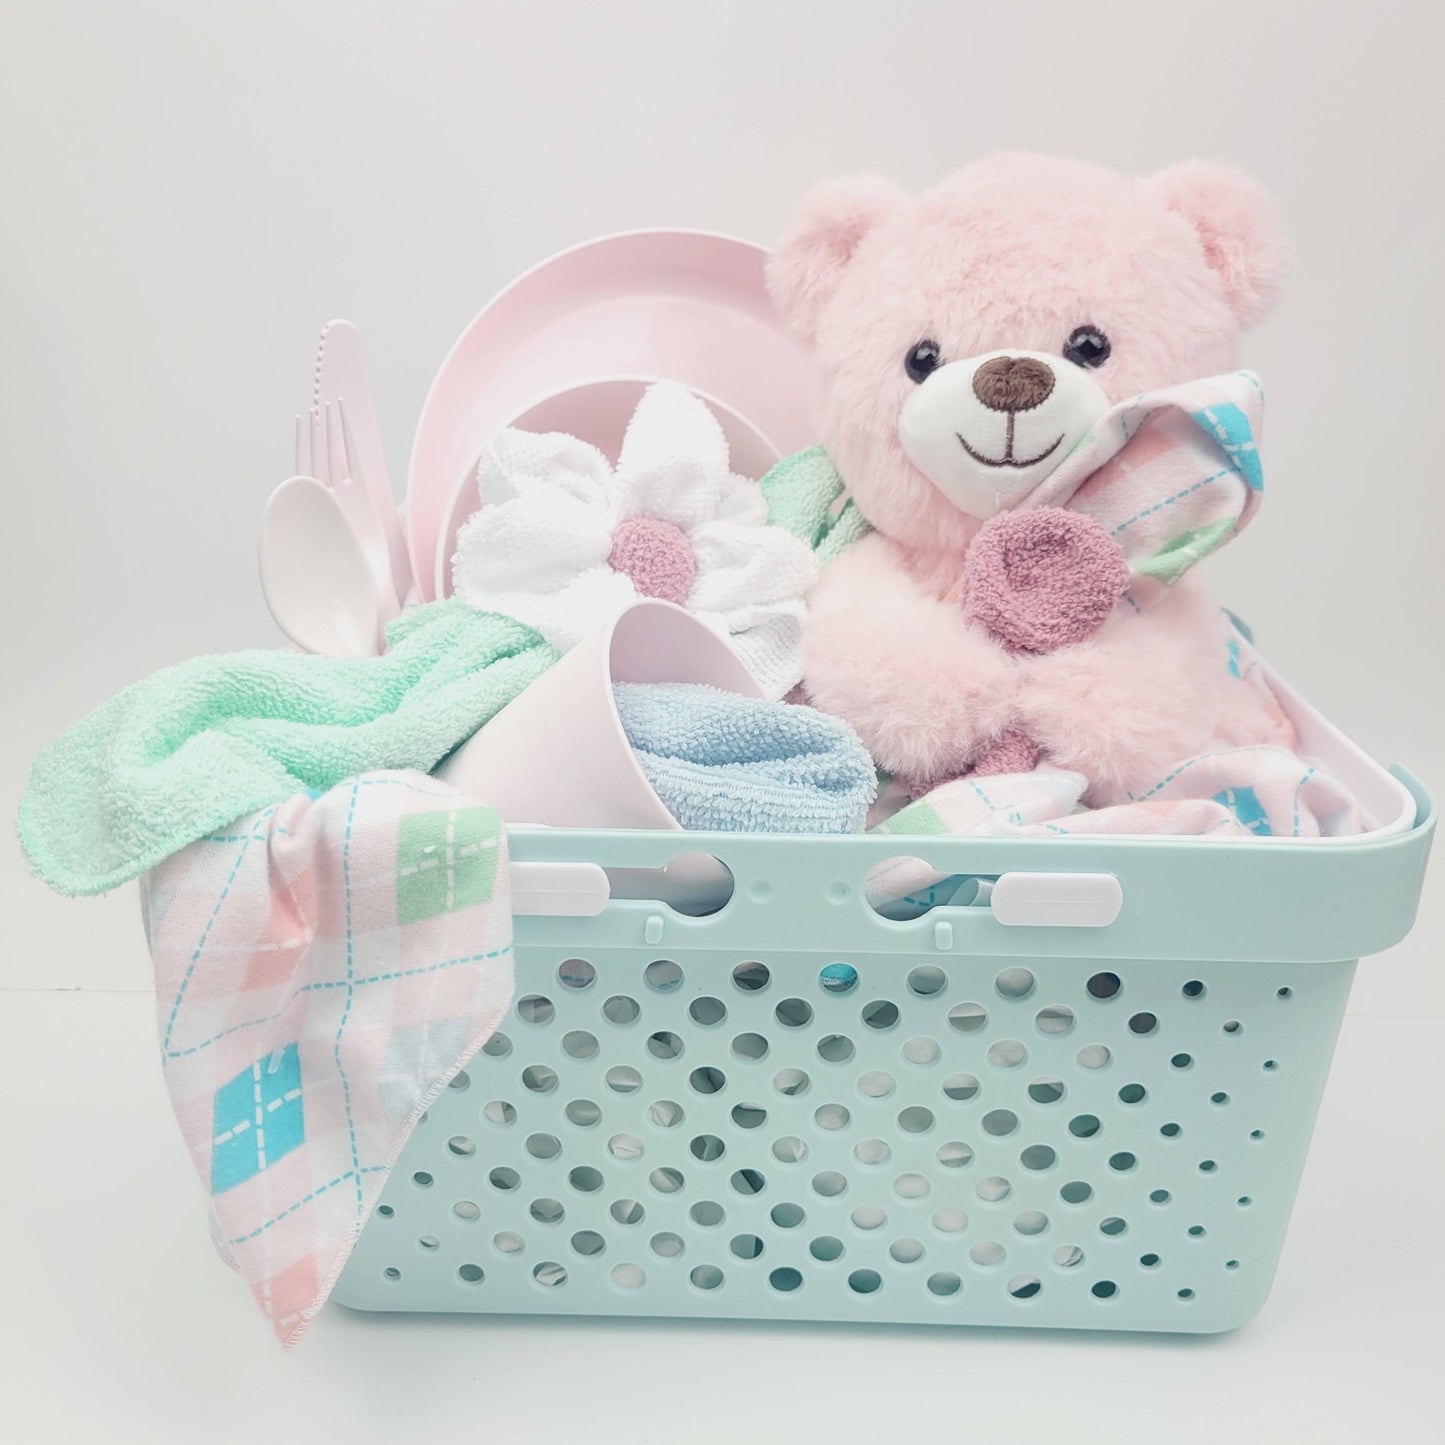 Ensemble cadeau pour babyshower pour bébé fille. Un panier turquoise rempli d'une couverture rose en flanelle avec des débarbouillettes, un toutou ourson rose et en ensemble d'assiette, bol, verre et ustensile rose. 